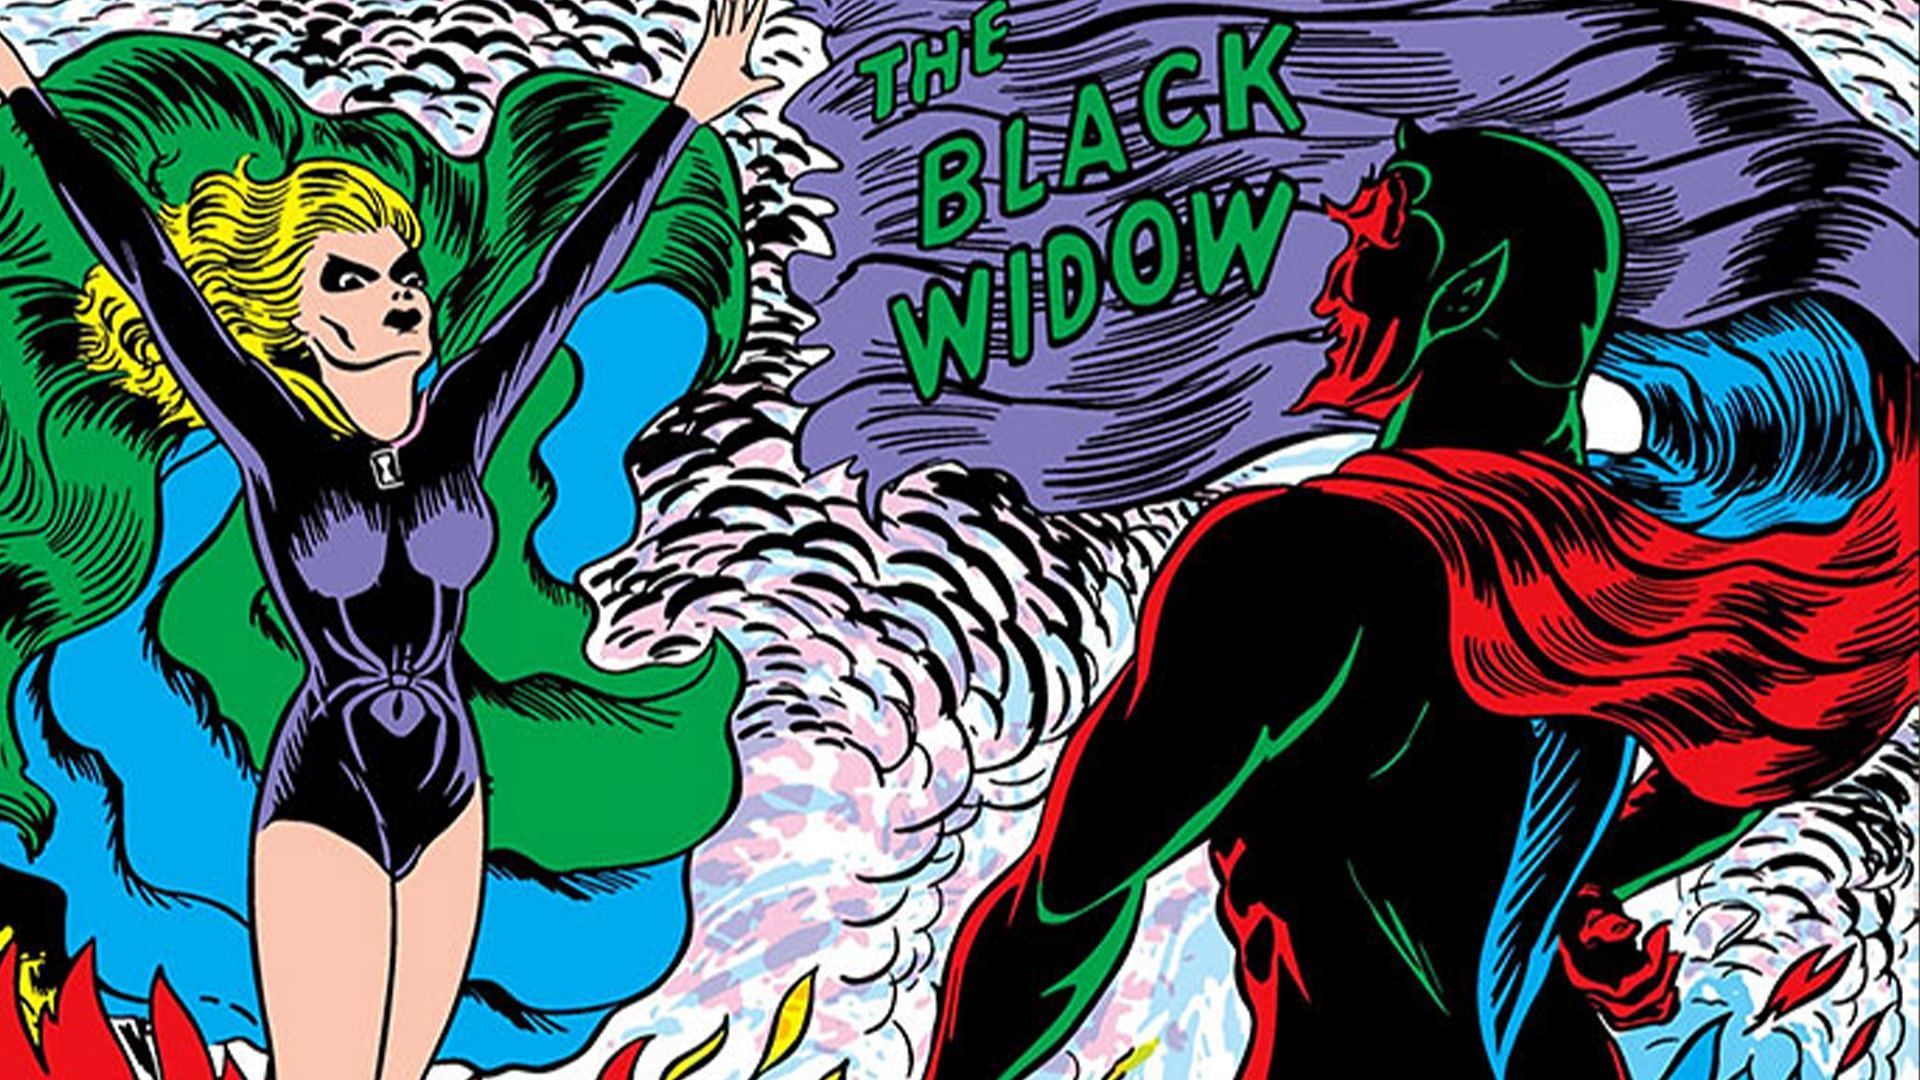 Black Widow (Image via Marvel)